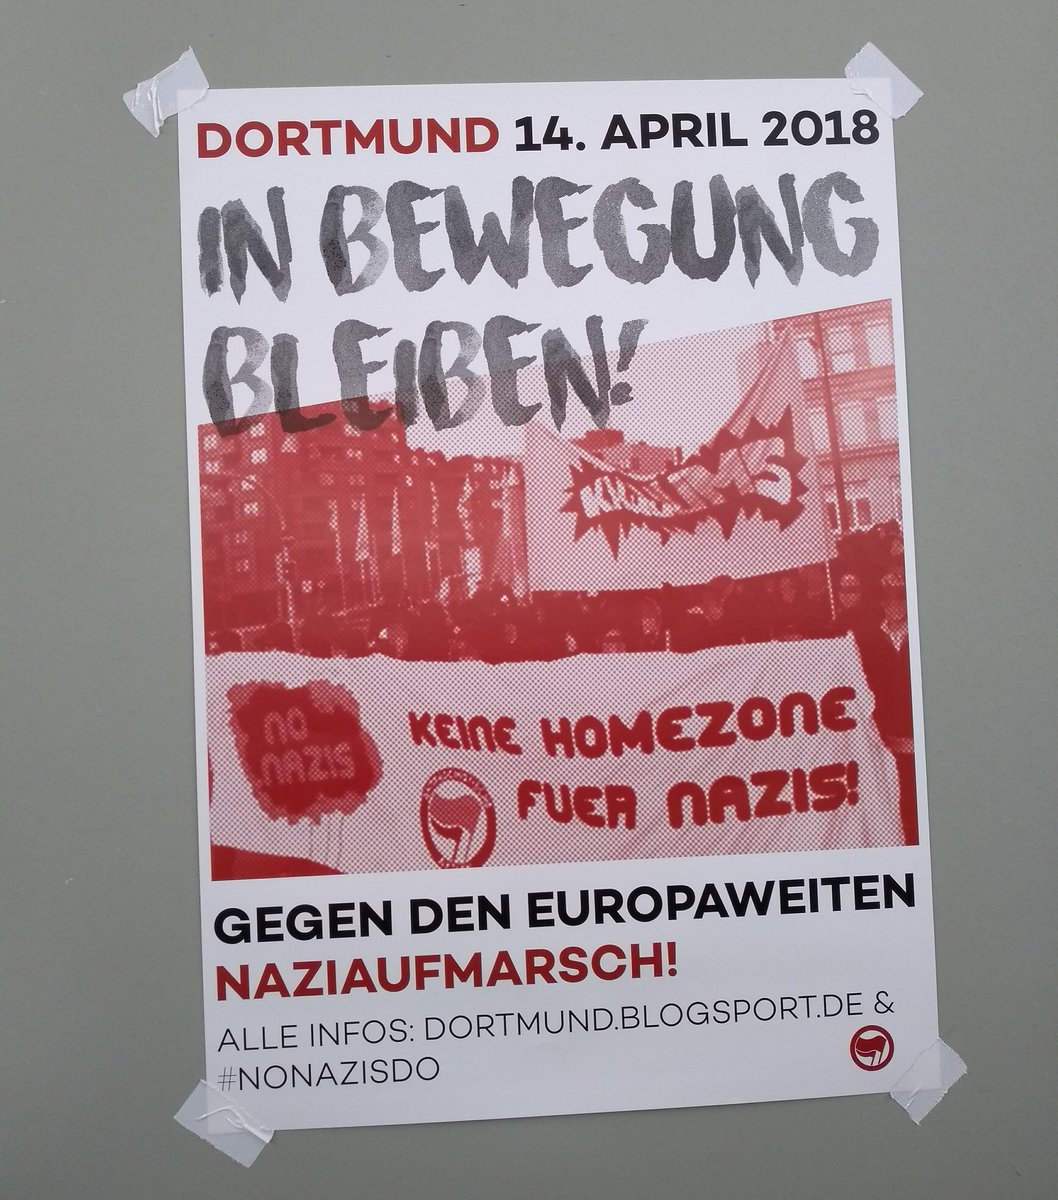 Bildergebnis für fotos vom plakat gegen den naziaufmarsch am 14. april 2018 in dortmund